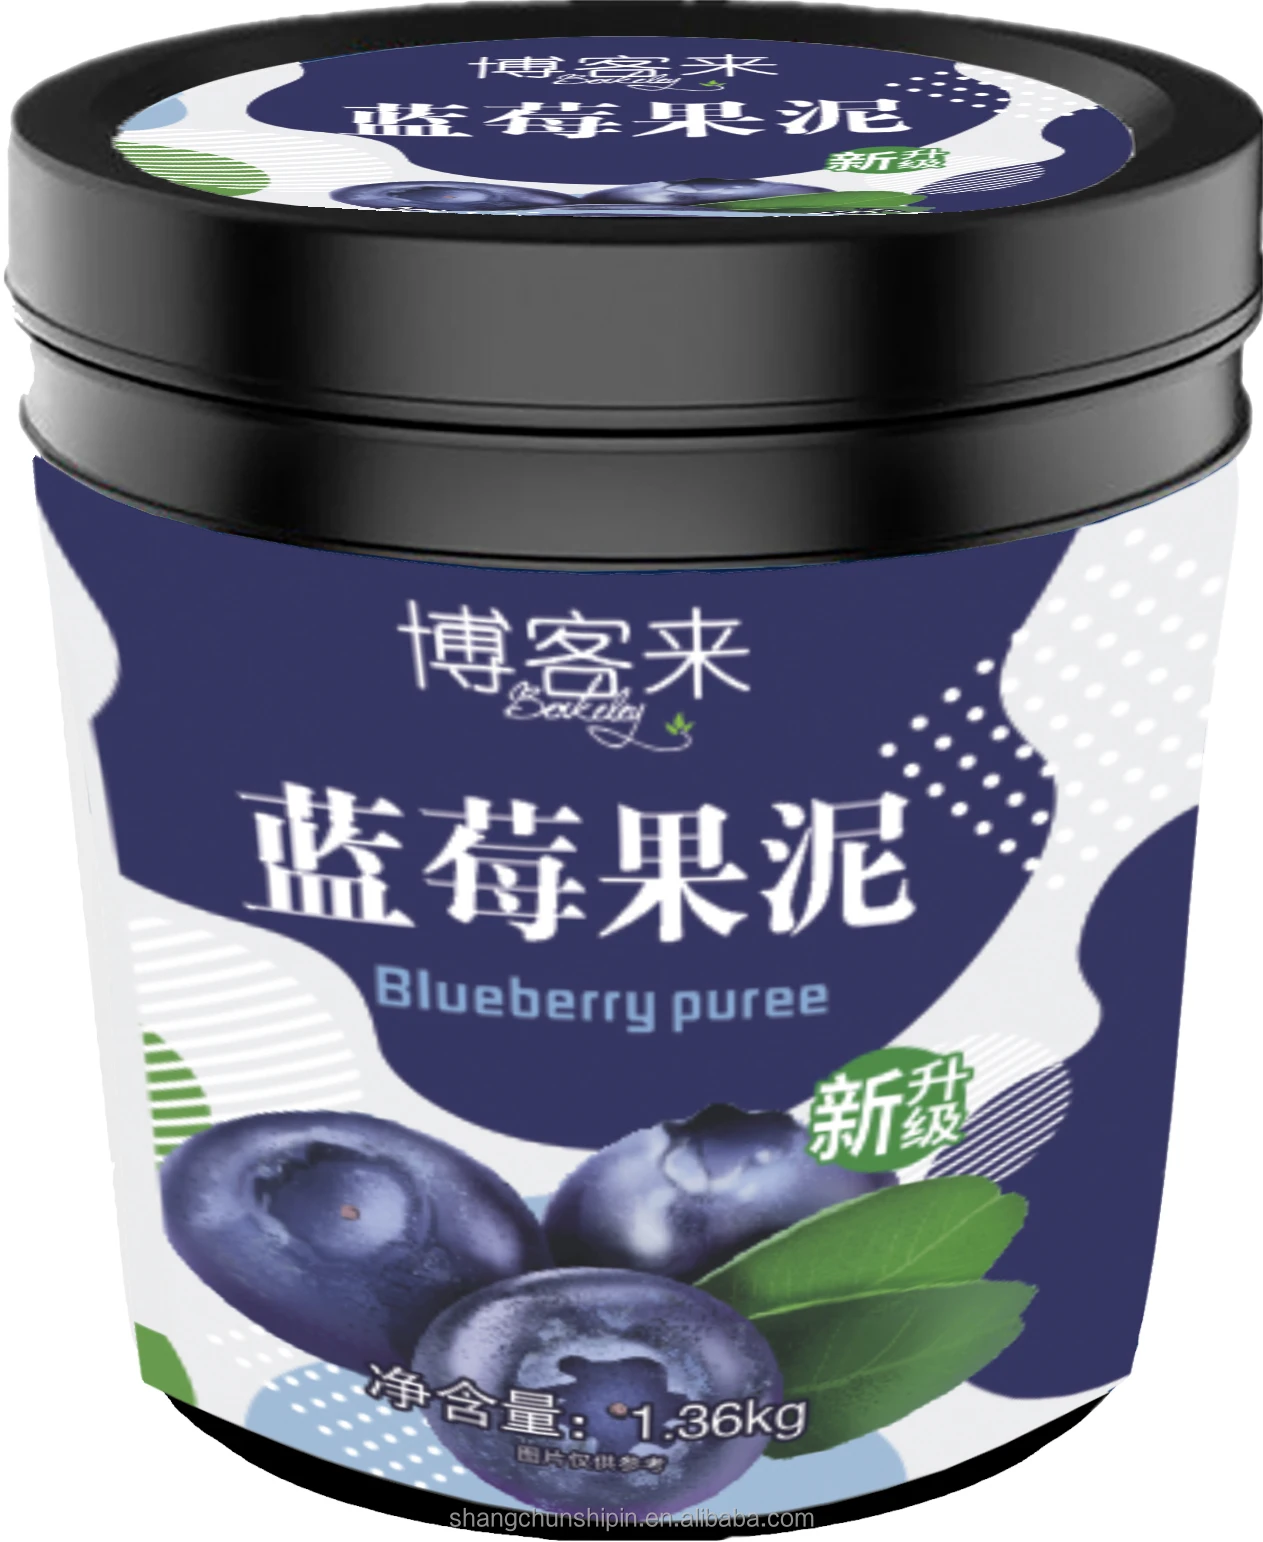 1 36 кг поставка от китайского производителя клубничный пюре концентрат фруктовый джем